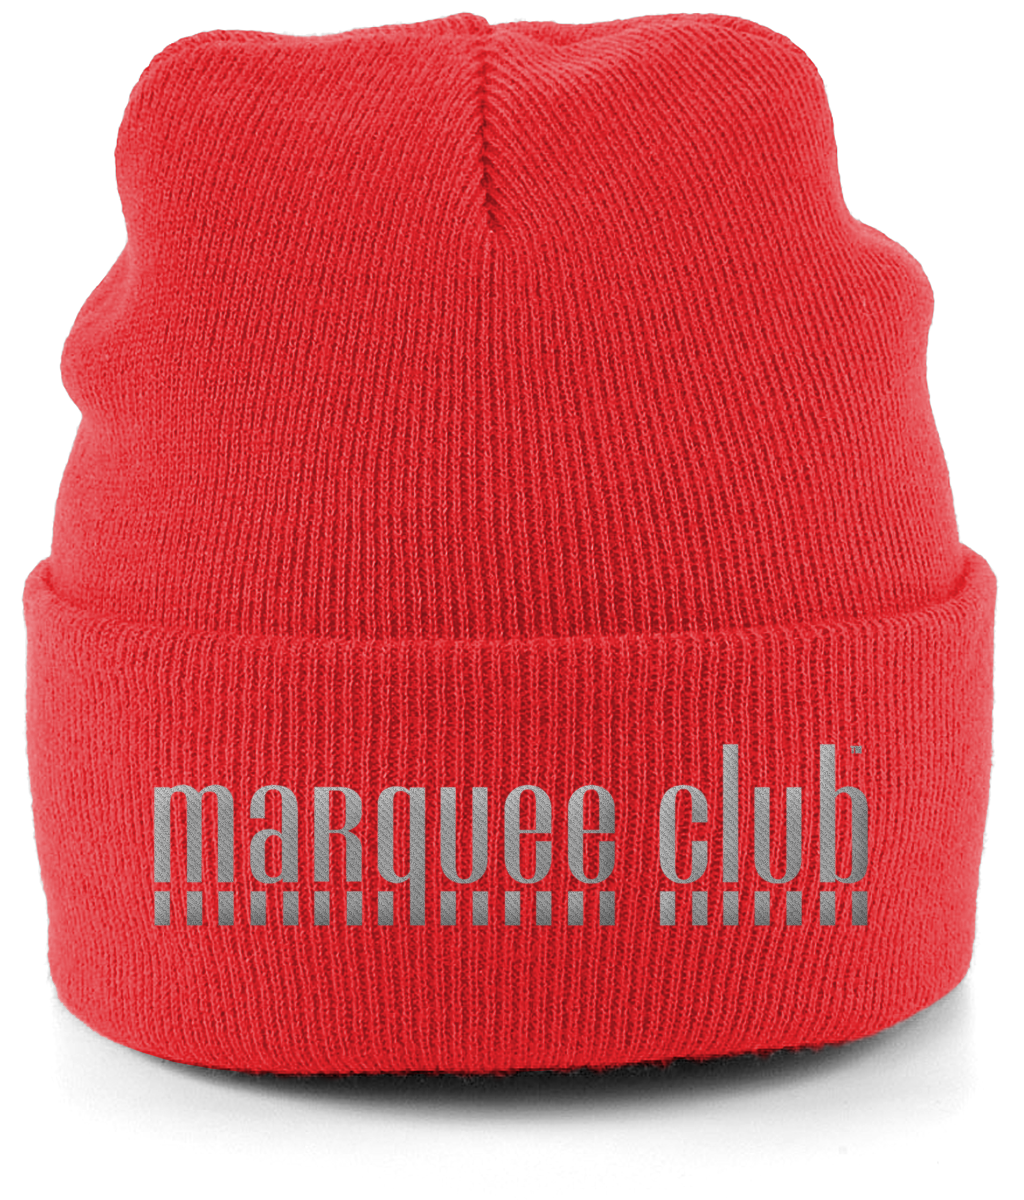 Marquee Club Beanie